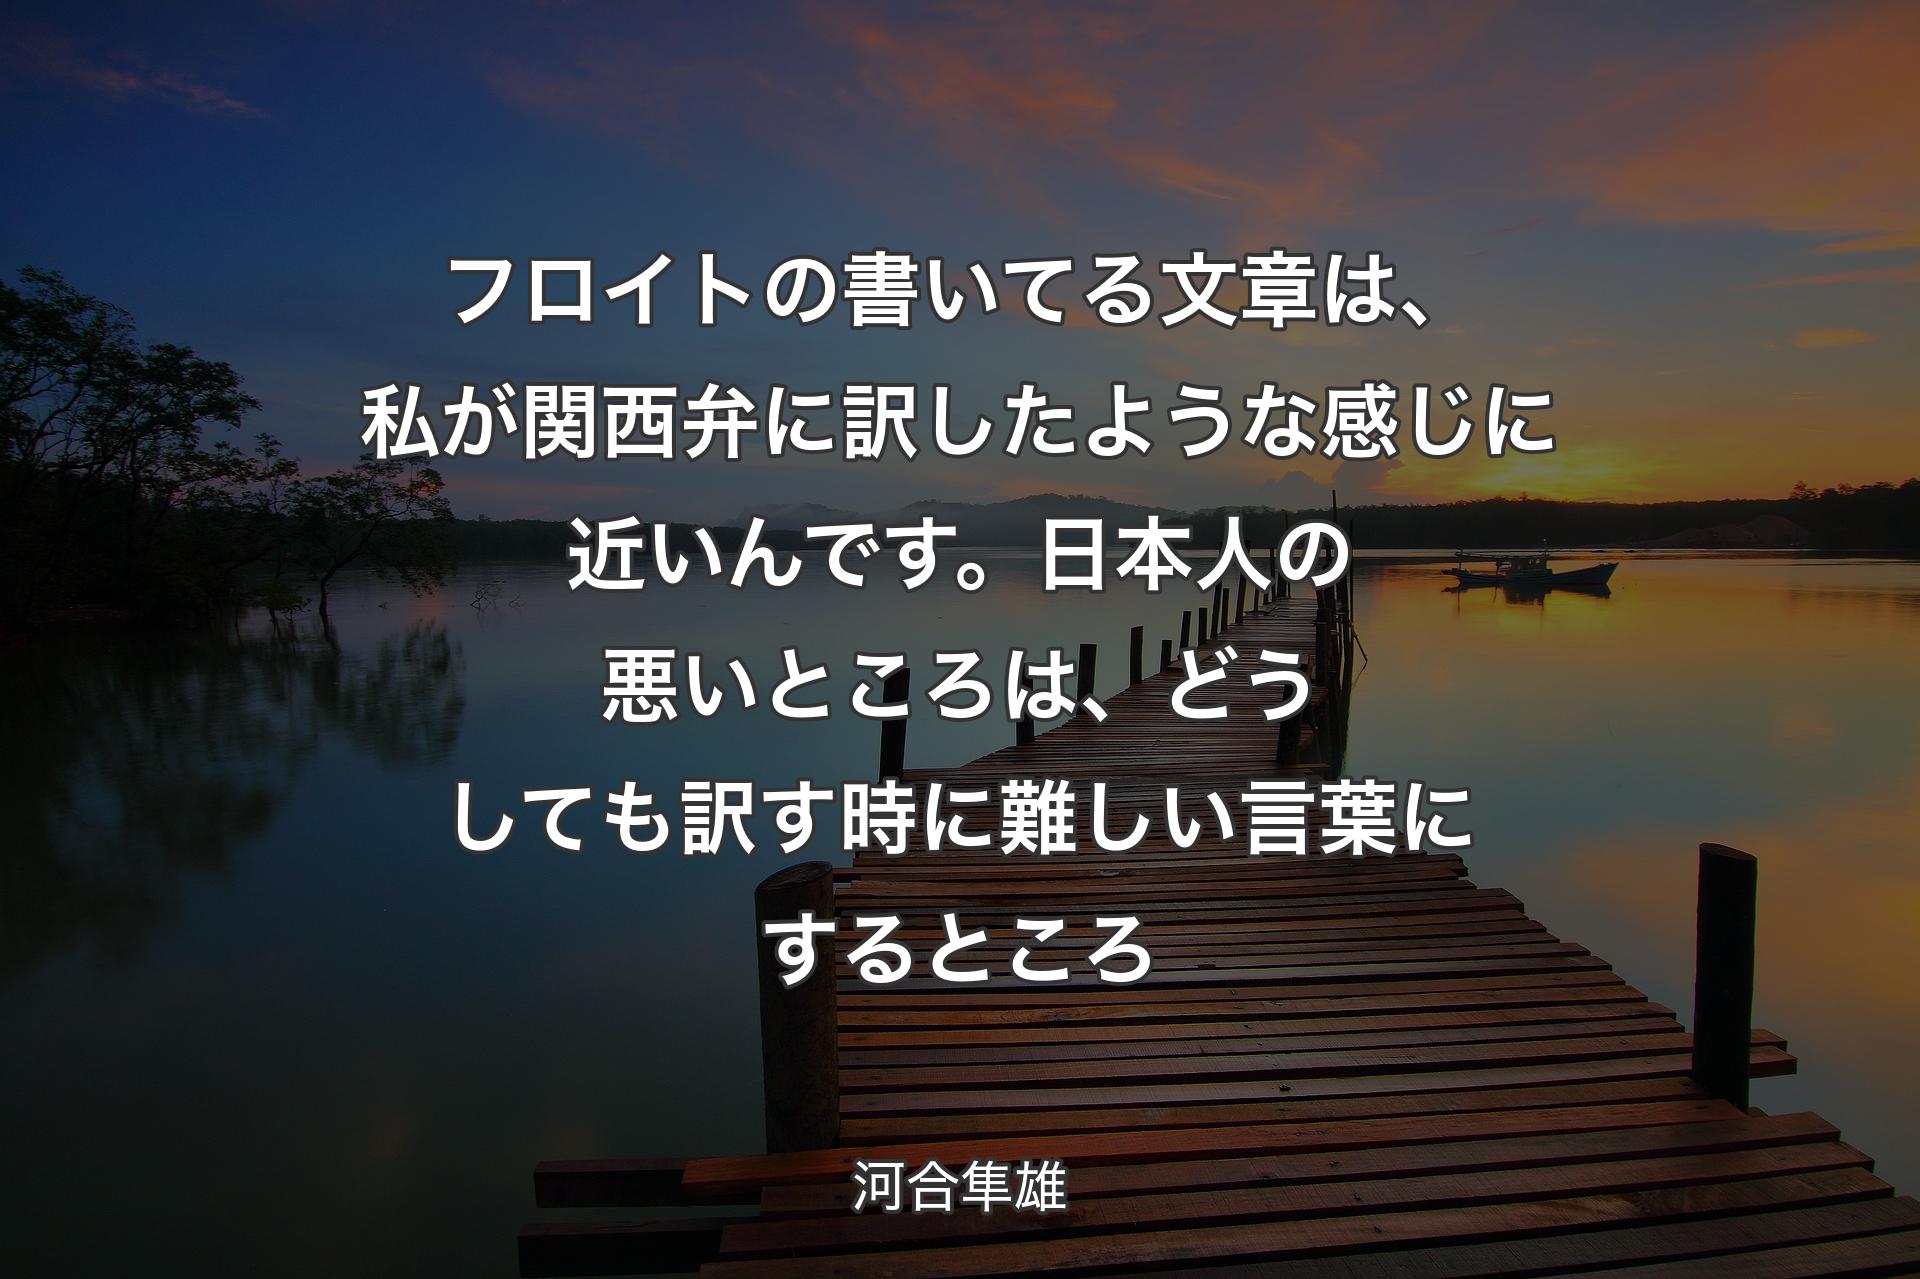 フロイトの書いてる文章は、私が関西弁に訳したような感じに近いんです。日本人の悪いところは、どうしても訳す時に難しい言葉にするところ - 河合隼雄